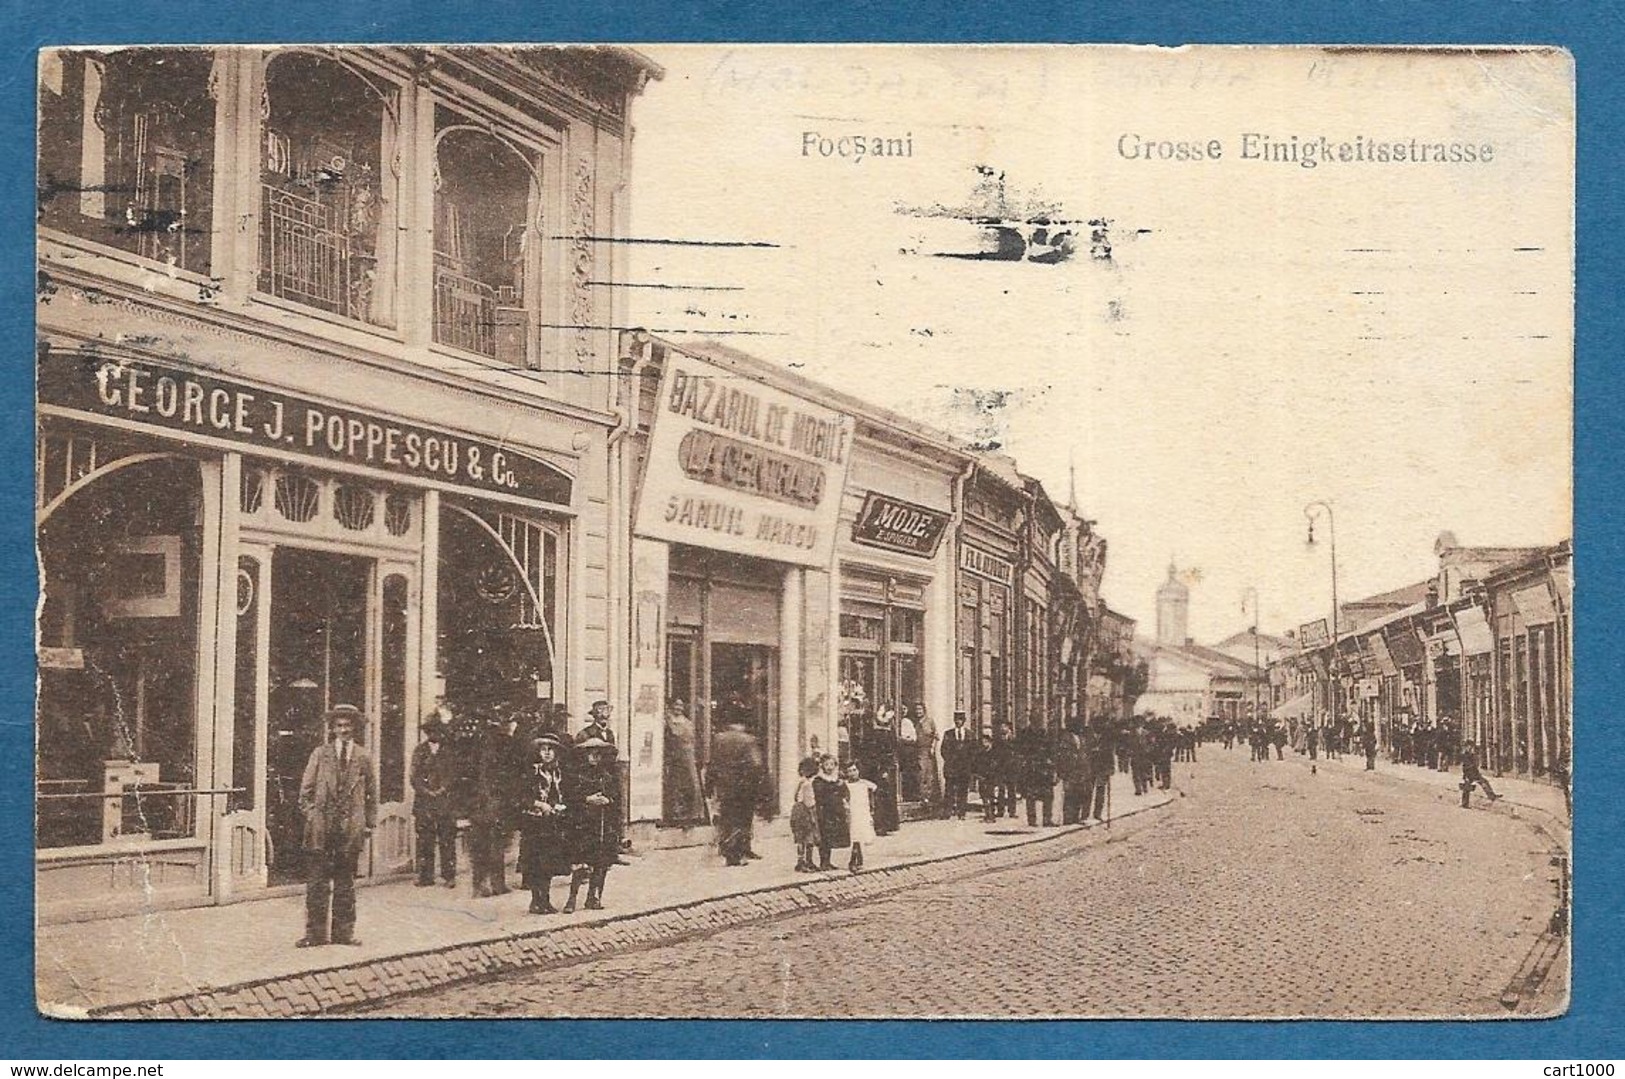 FOCSANI GROSSE EINIGKEITSTRASSE 1920 - Rumania